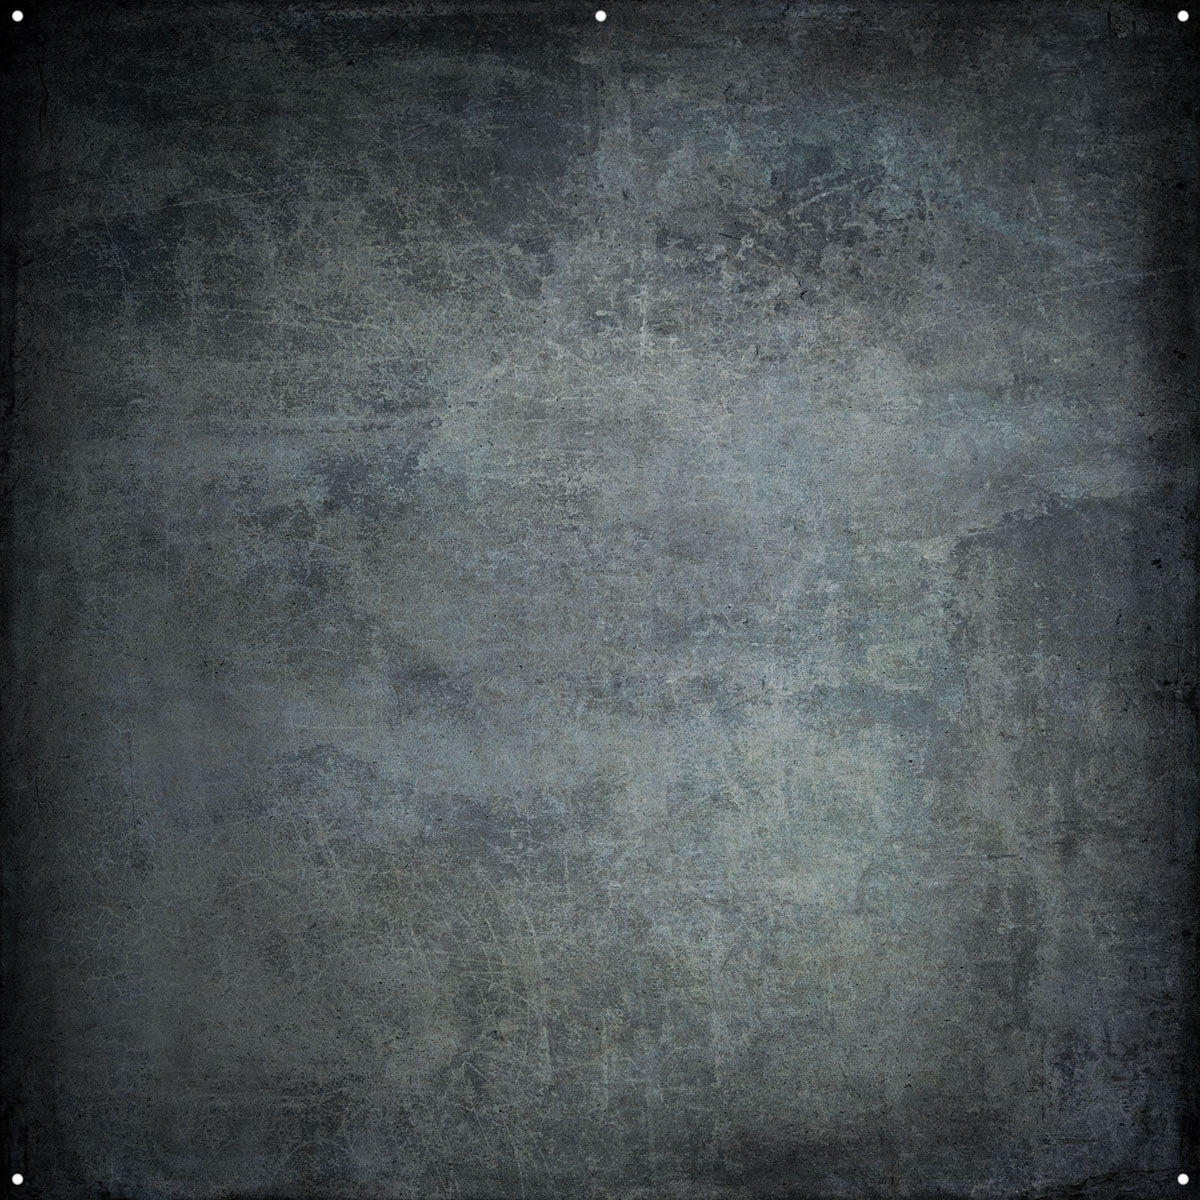 Westcott X-Drop Pro Fabric Backdrop - Grunge Concrete by Joel Grimes (8' x 8')